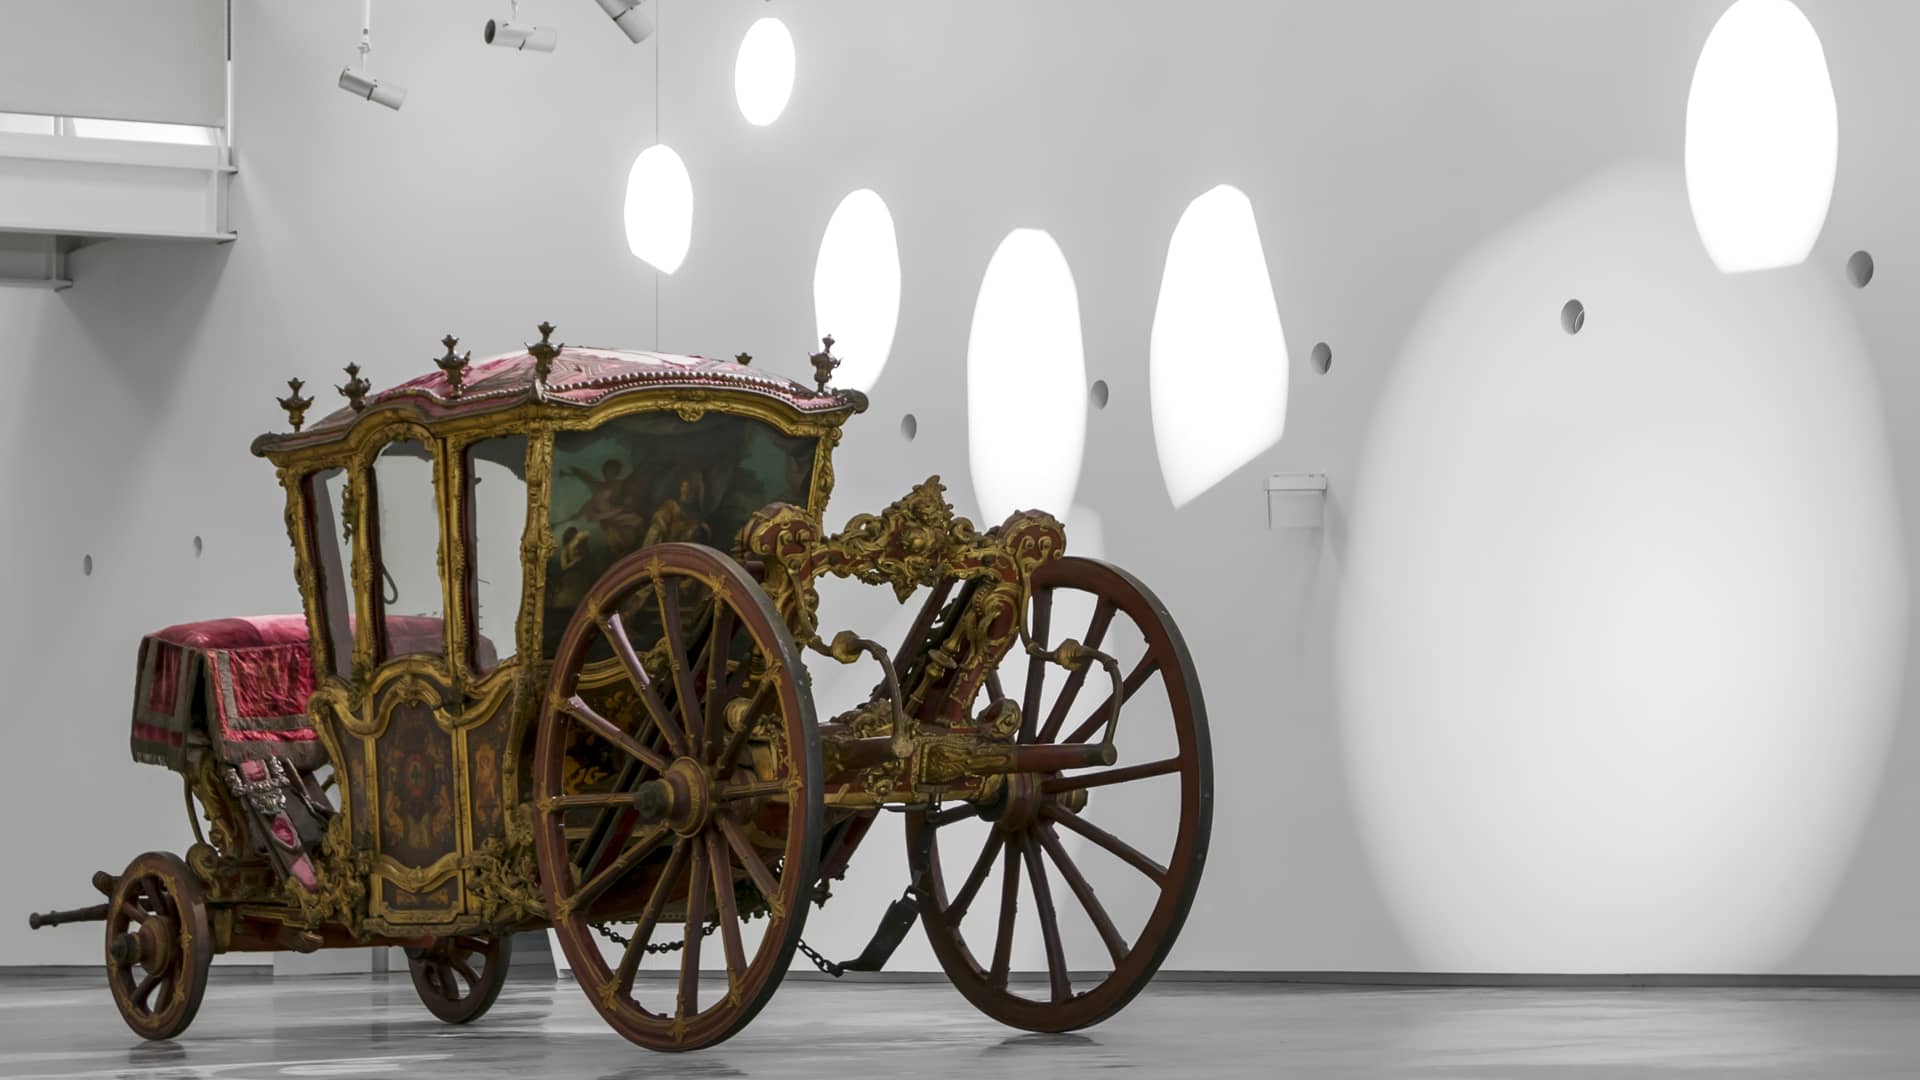 le musée national des carosses à Lisbonne a la plus grande collection de carrosses au monde